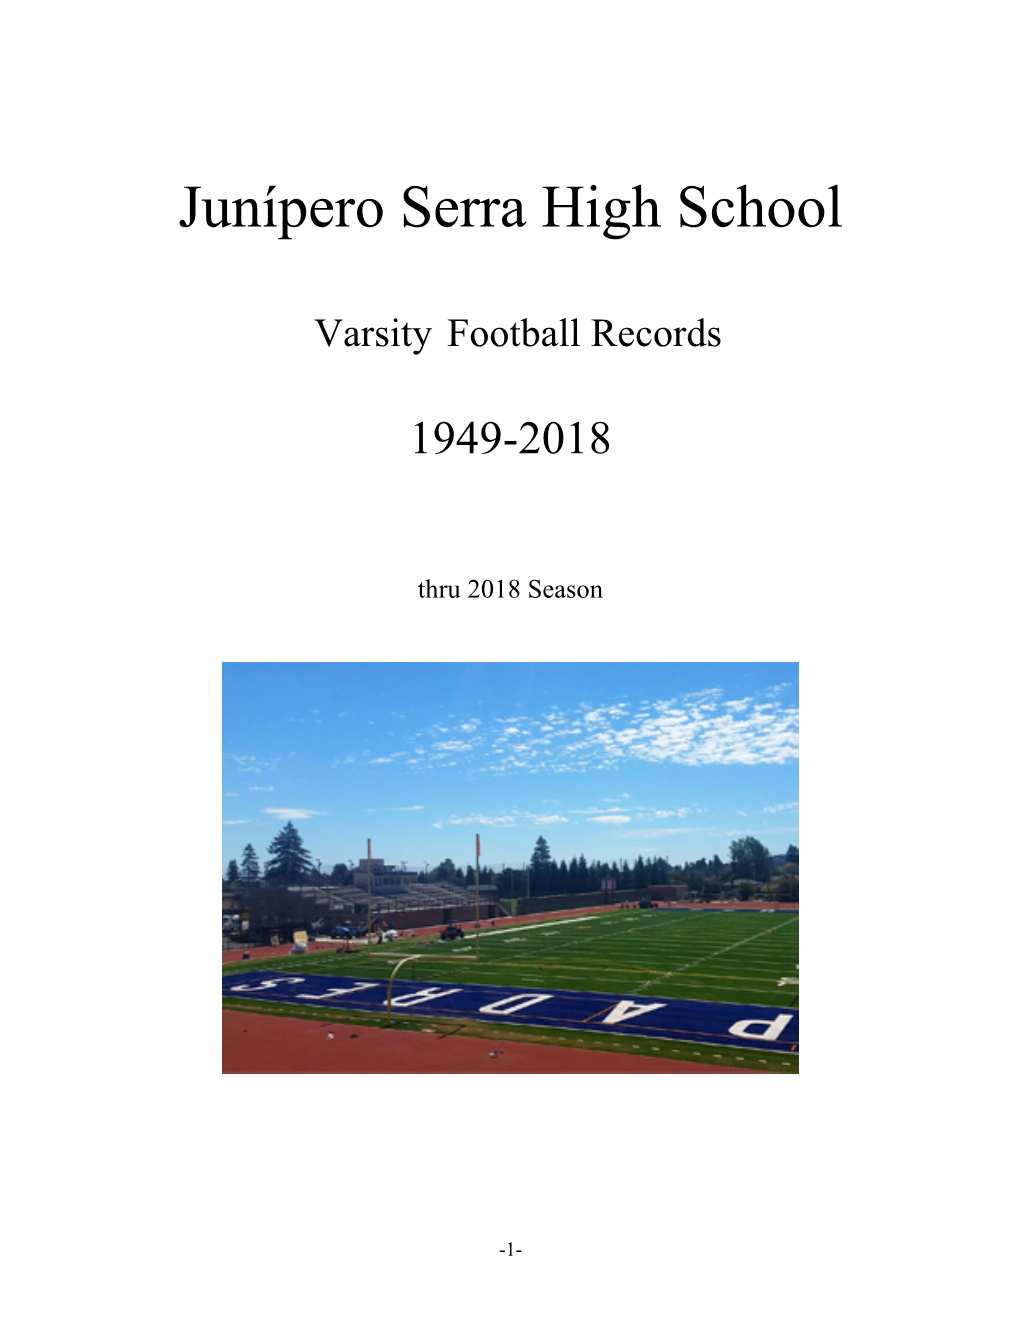 Junipero Serra High School Football Records